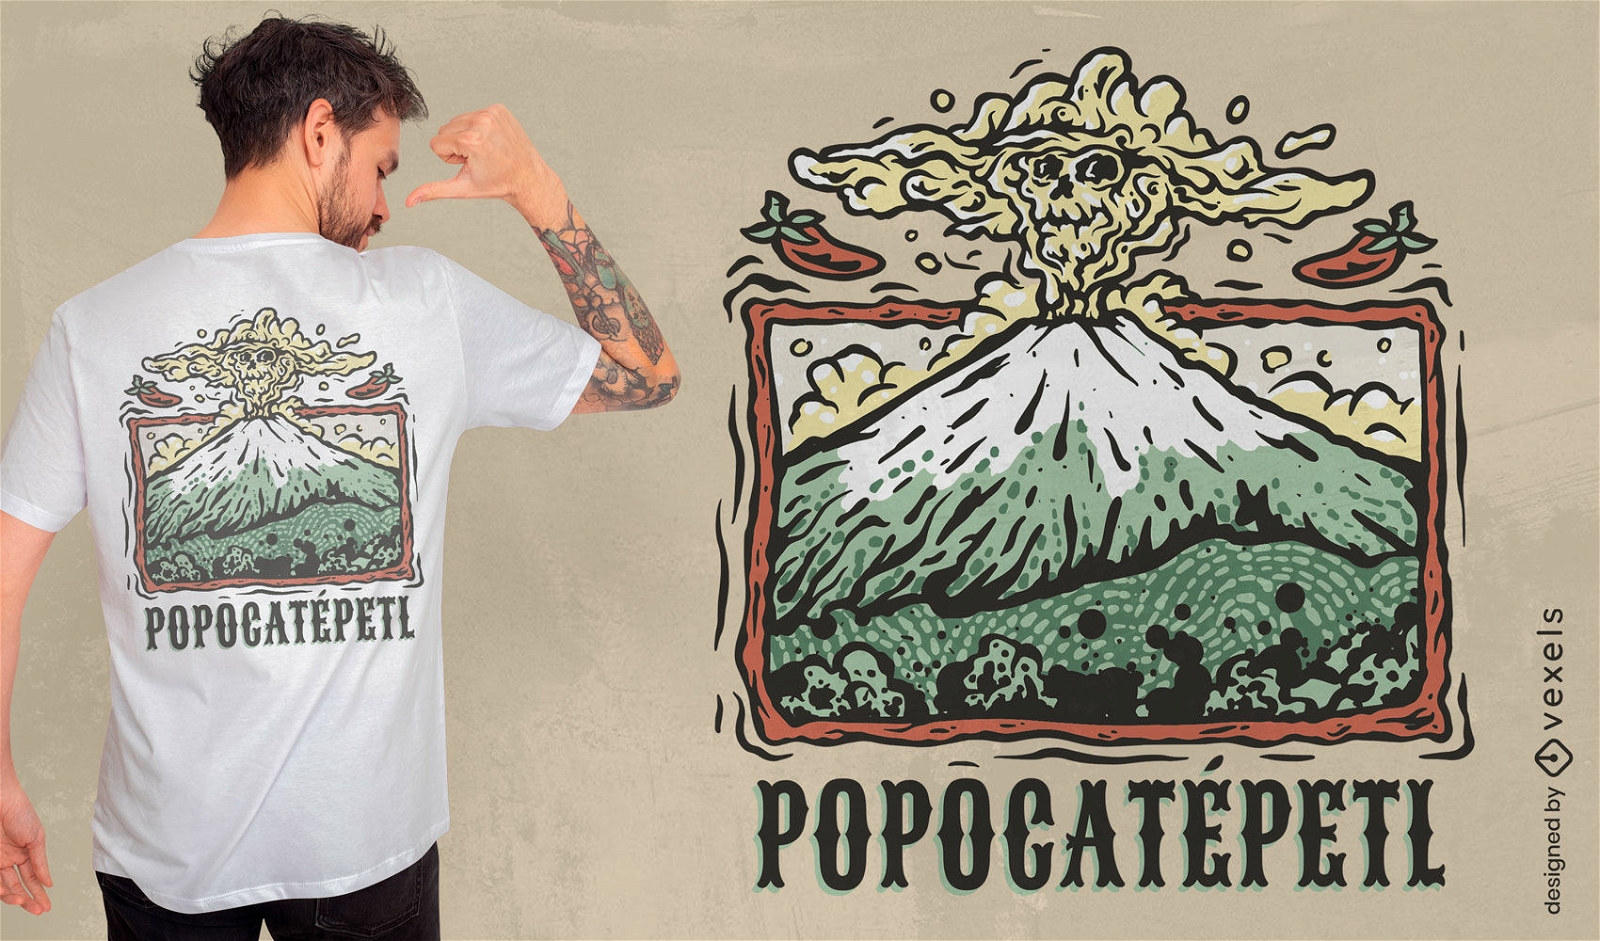 Diseño de camiseta en erupción de volcán mexicano.